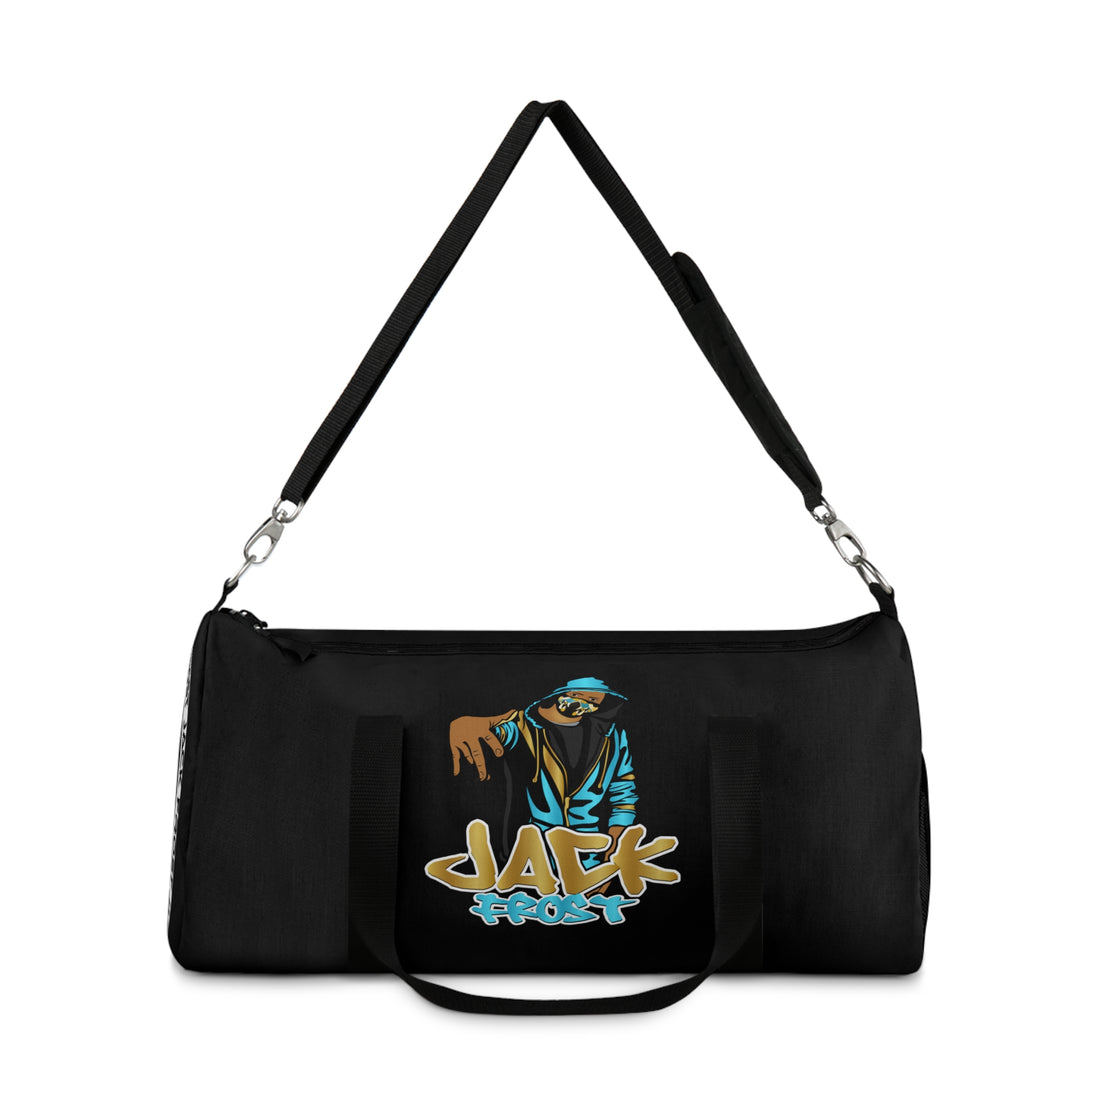 Jack Frost Gym Bag